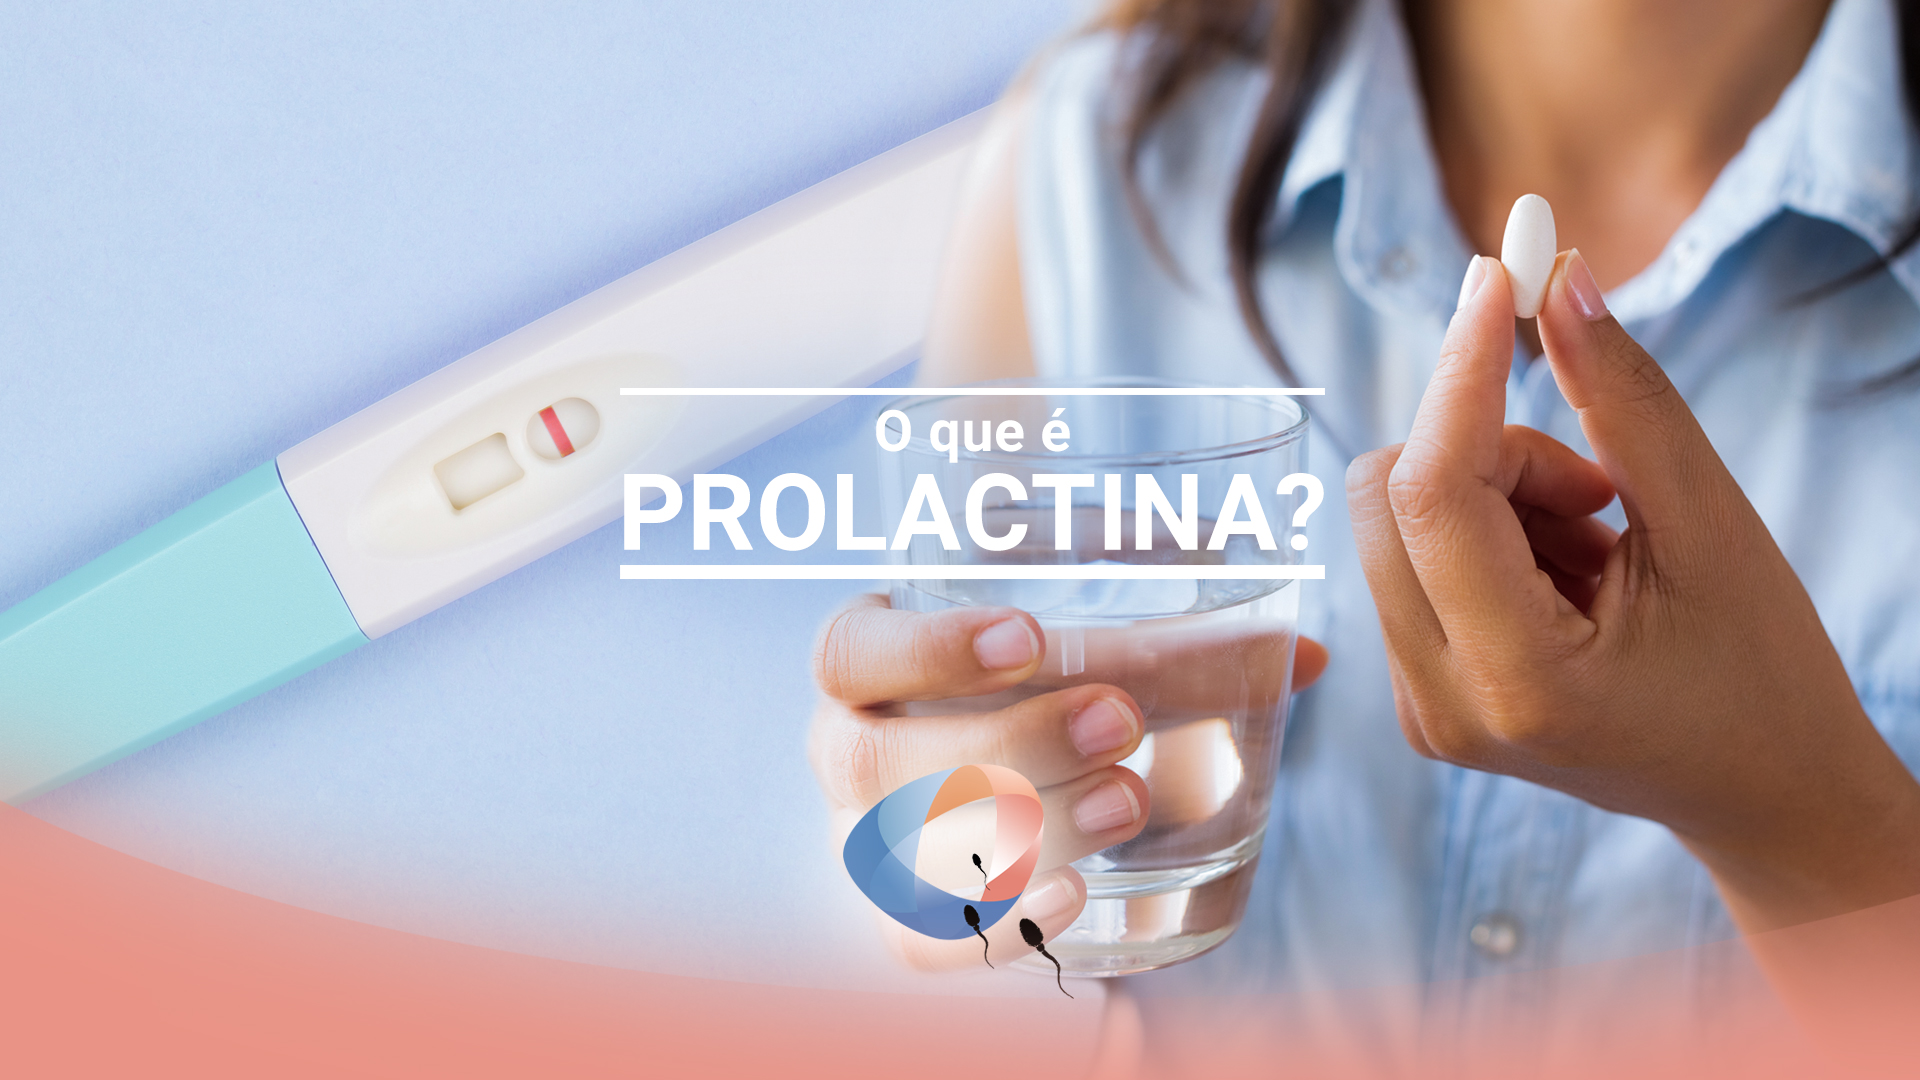 O que é prolactina?